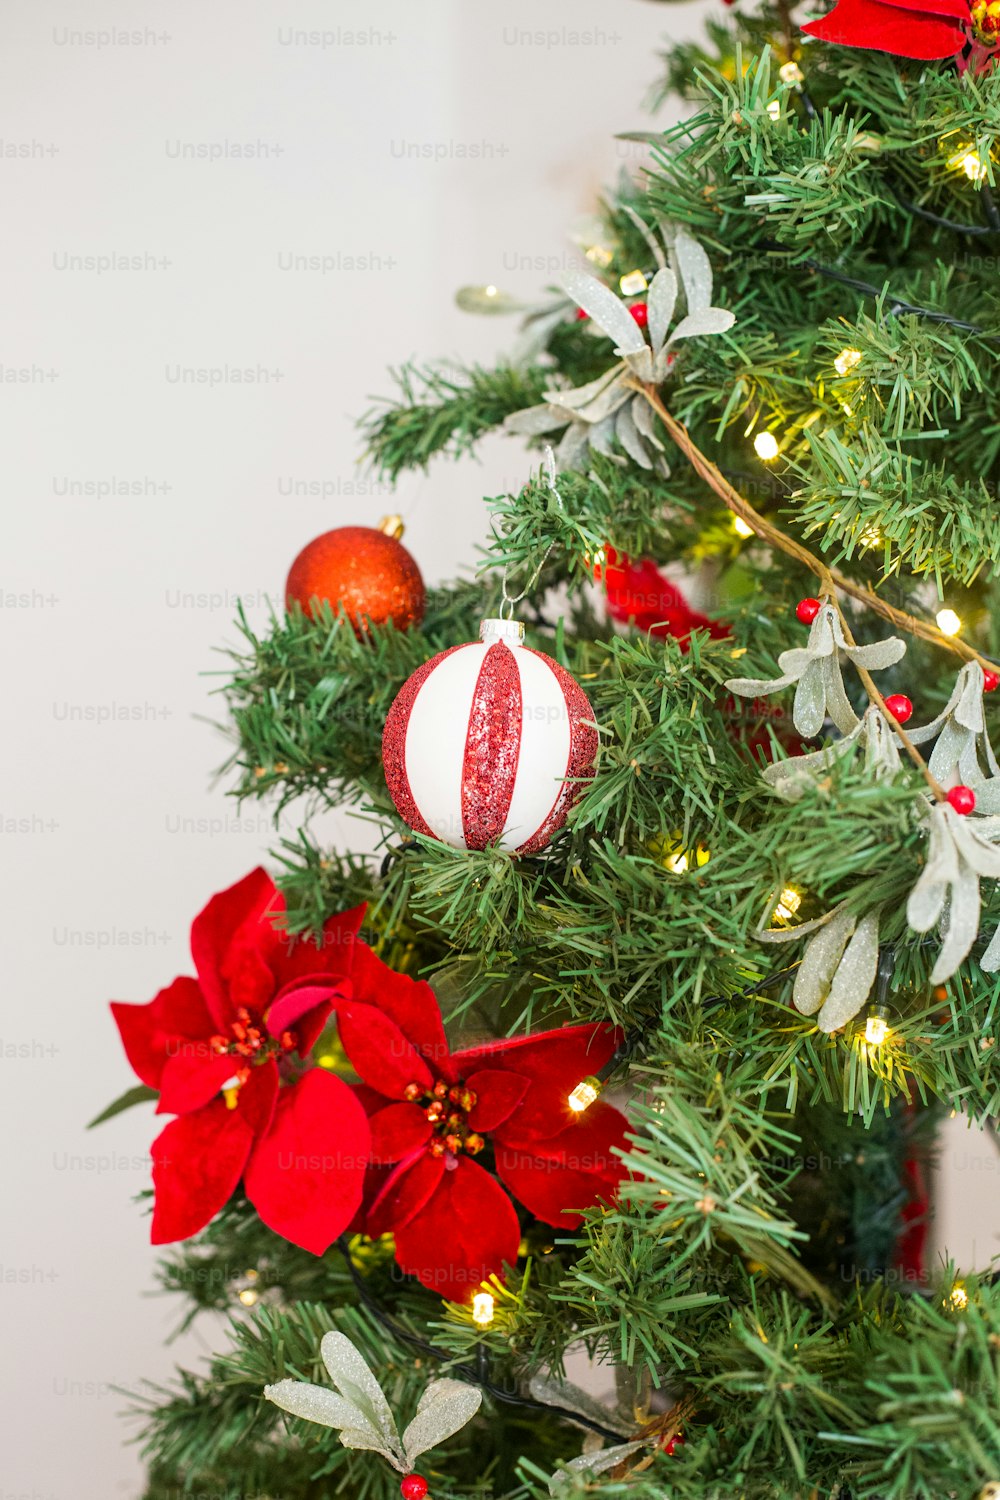 Uma árvore de Natal decorada com ornamentos vermelhos e brancos